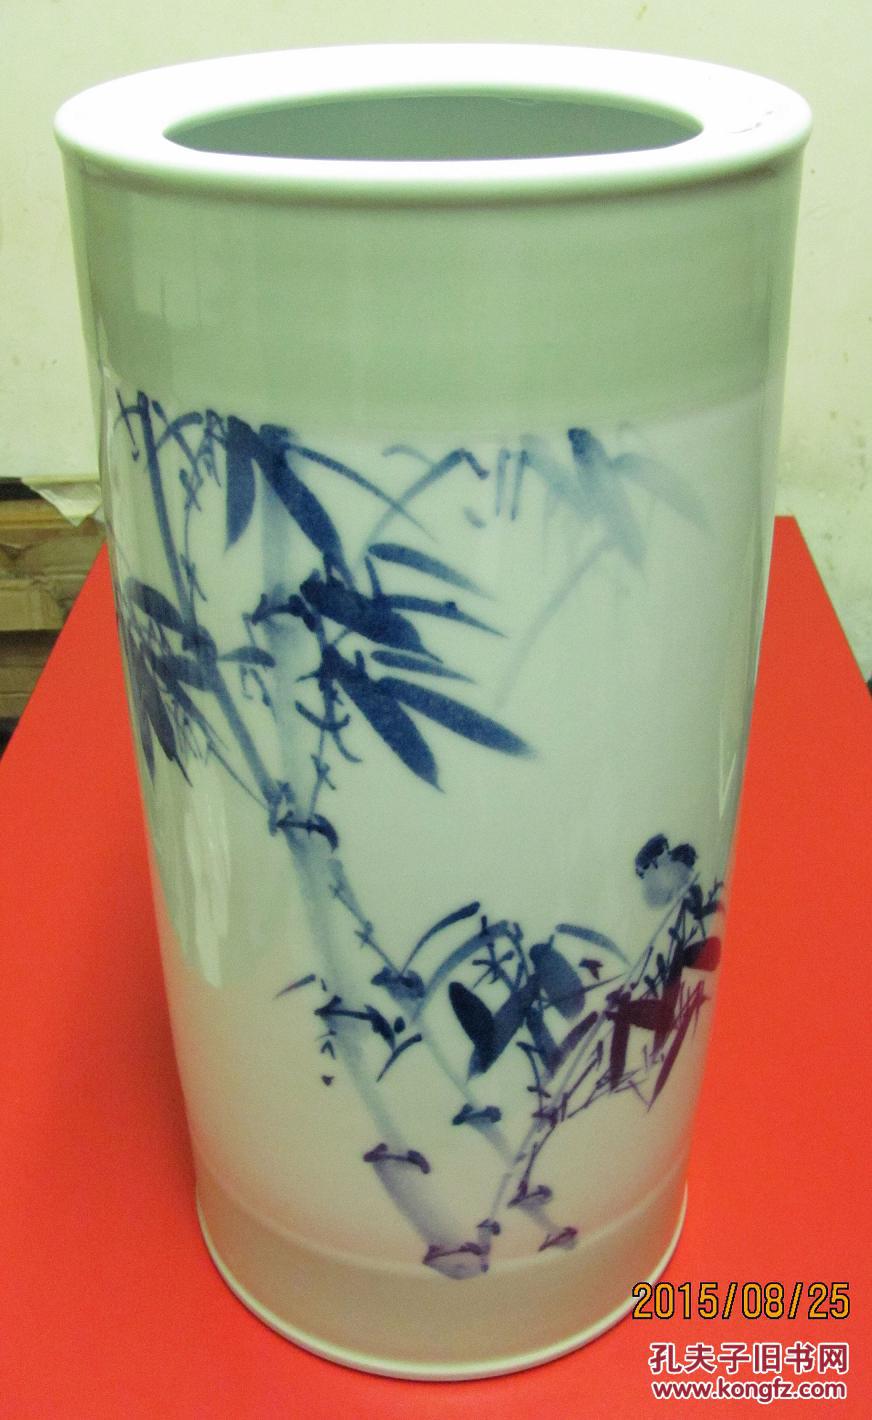 节节高升·笔筒（花瓶）·景德镇陶瓷艺术名人名作·郑桂梅乙未年作品